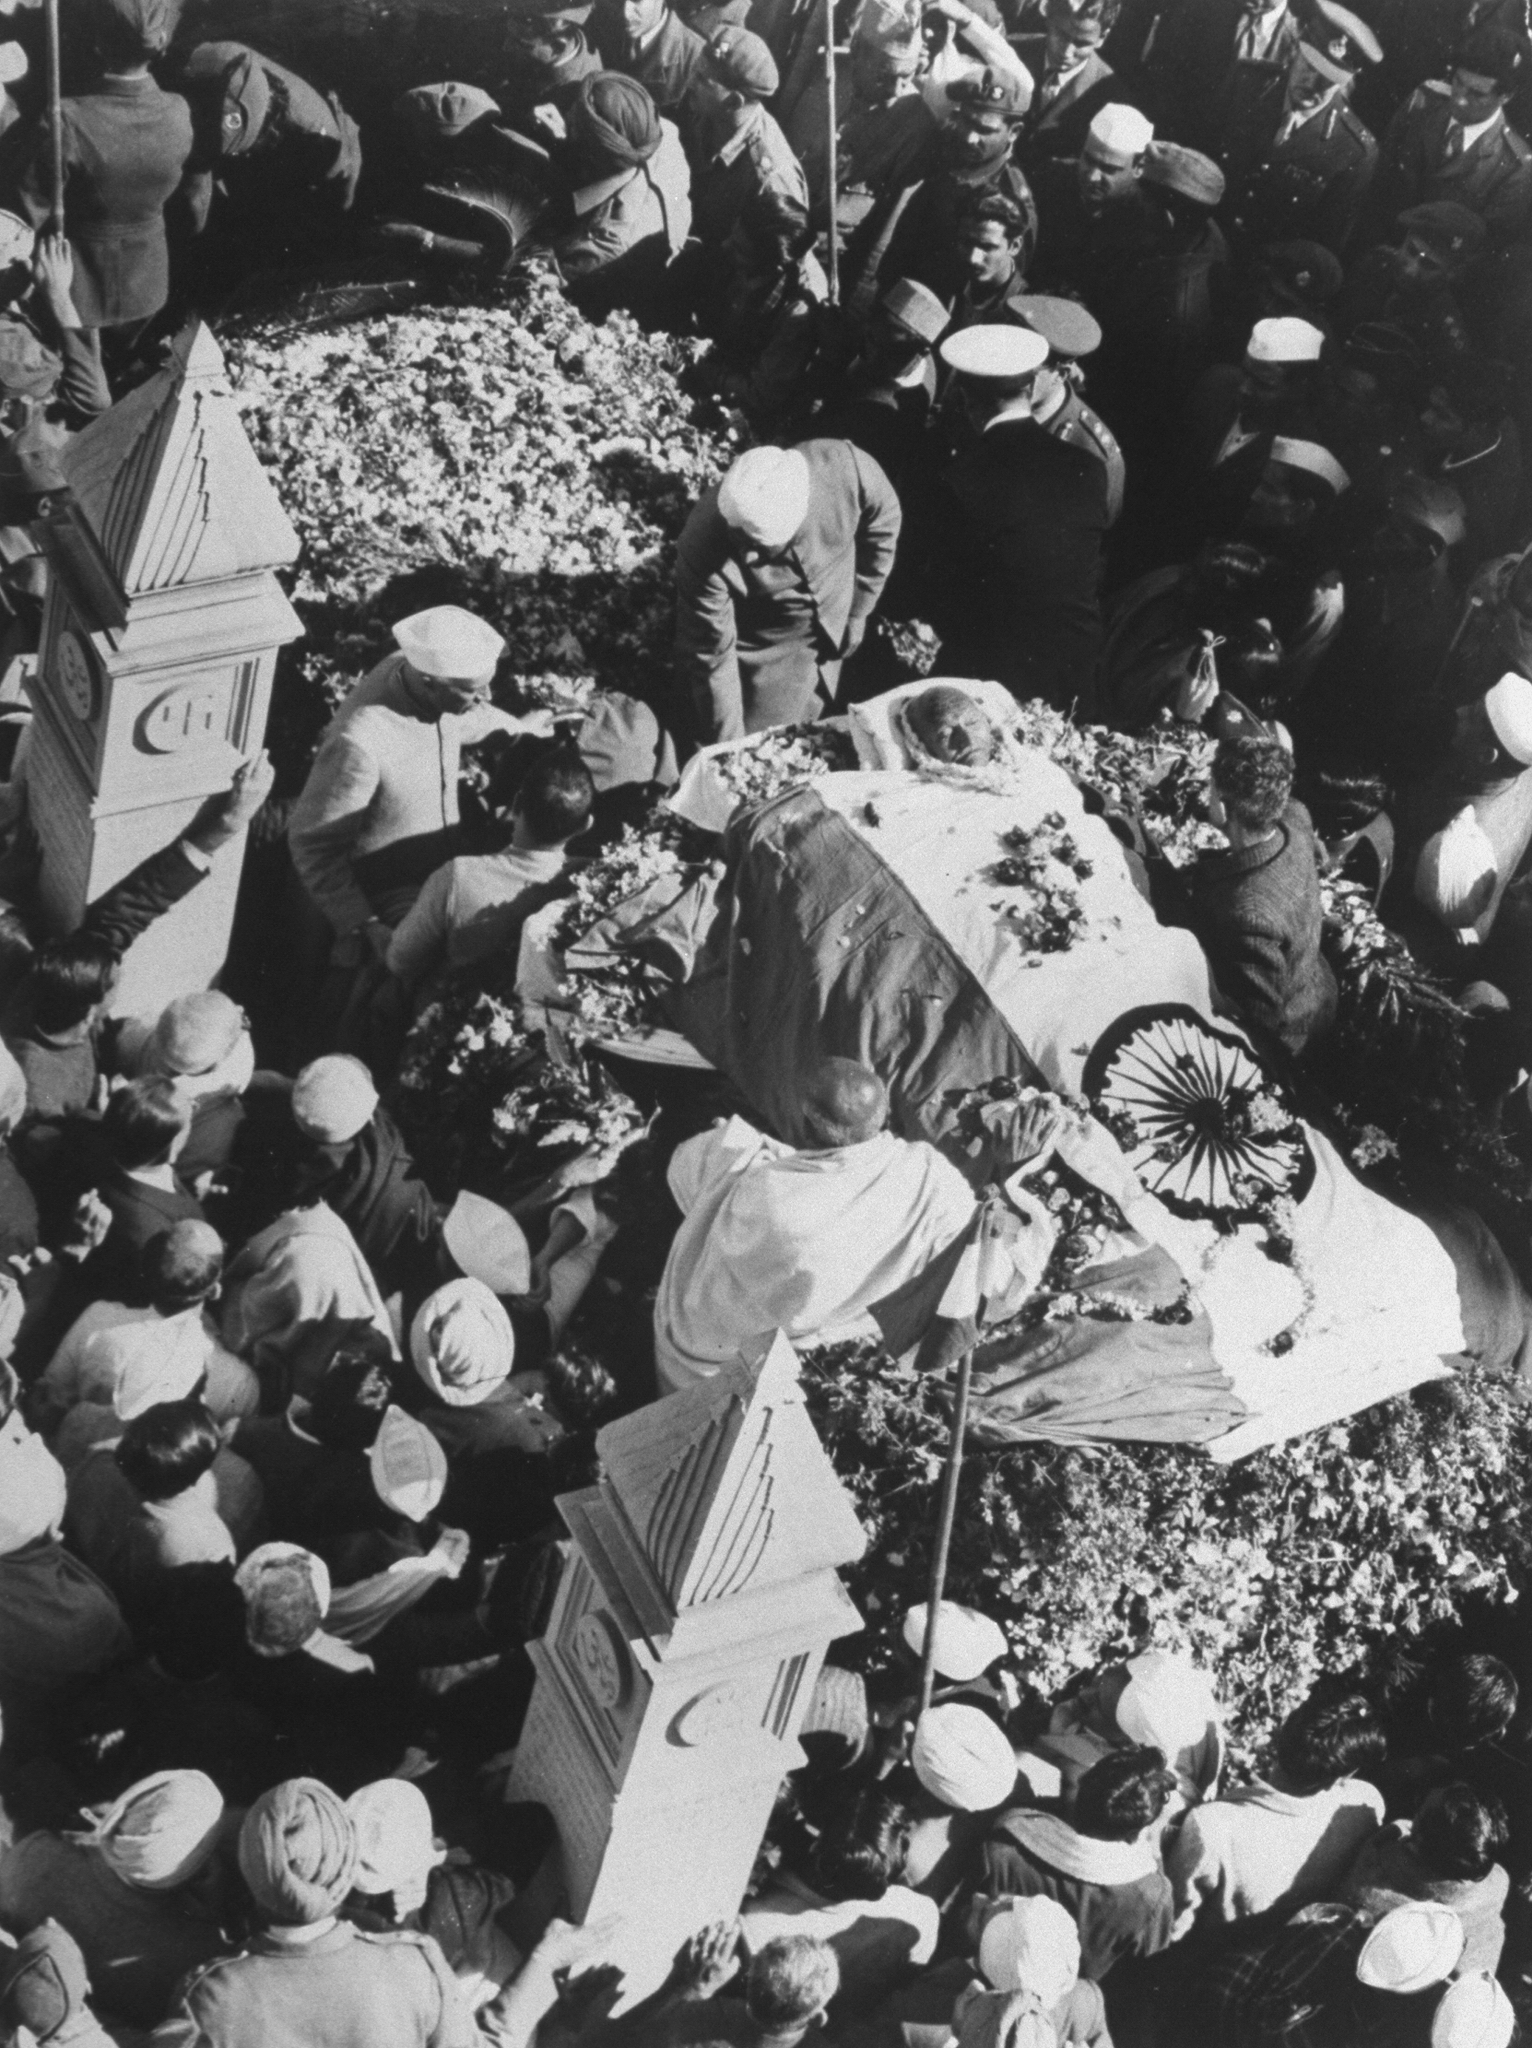 Mohandas Gandhi's funeral, 1948